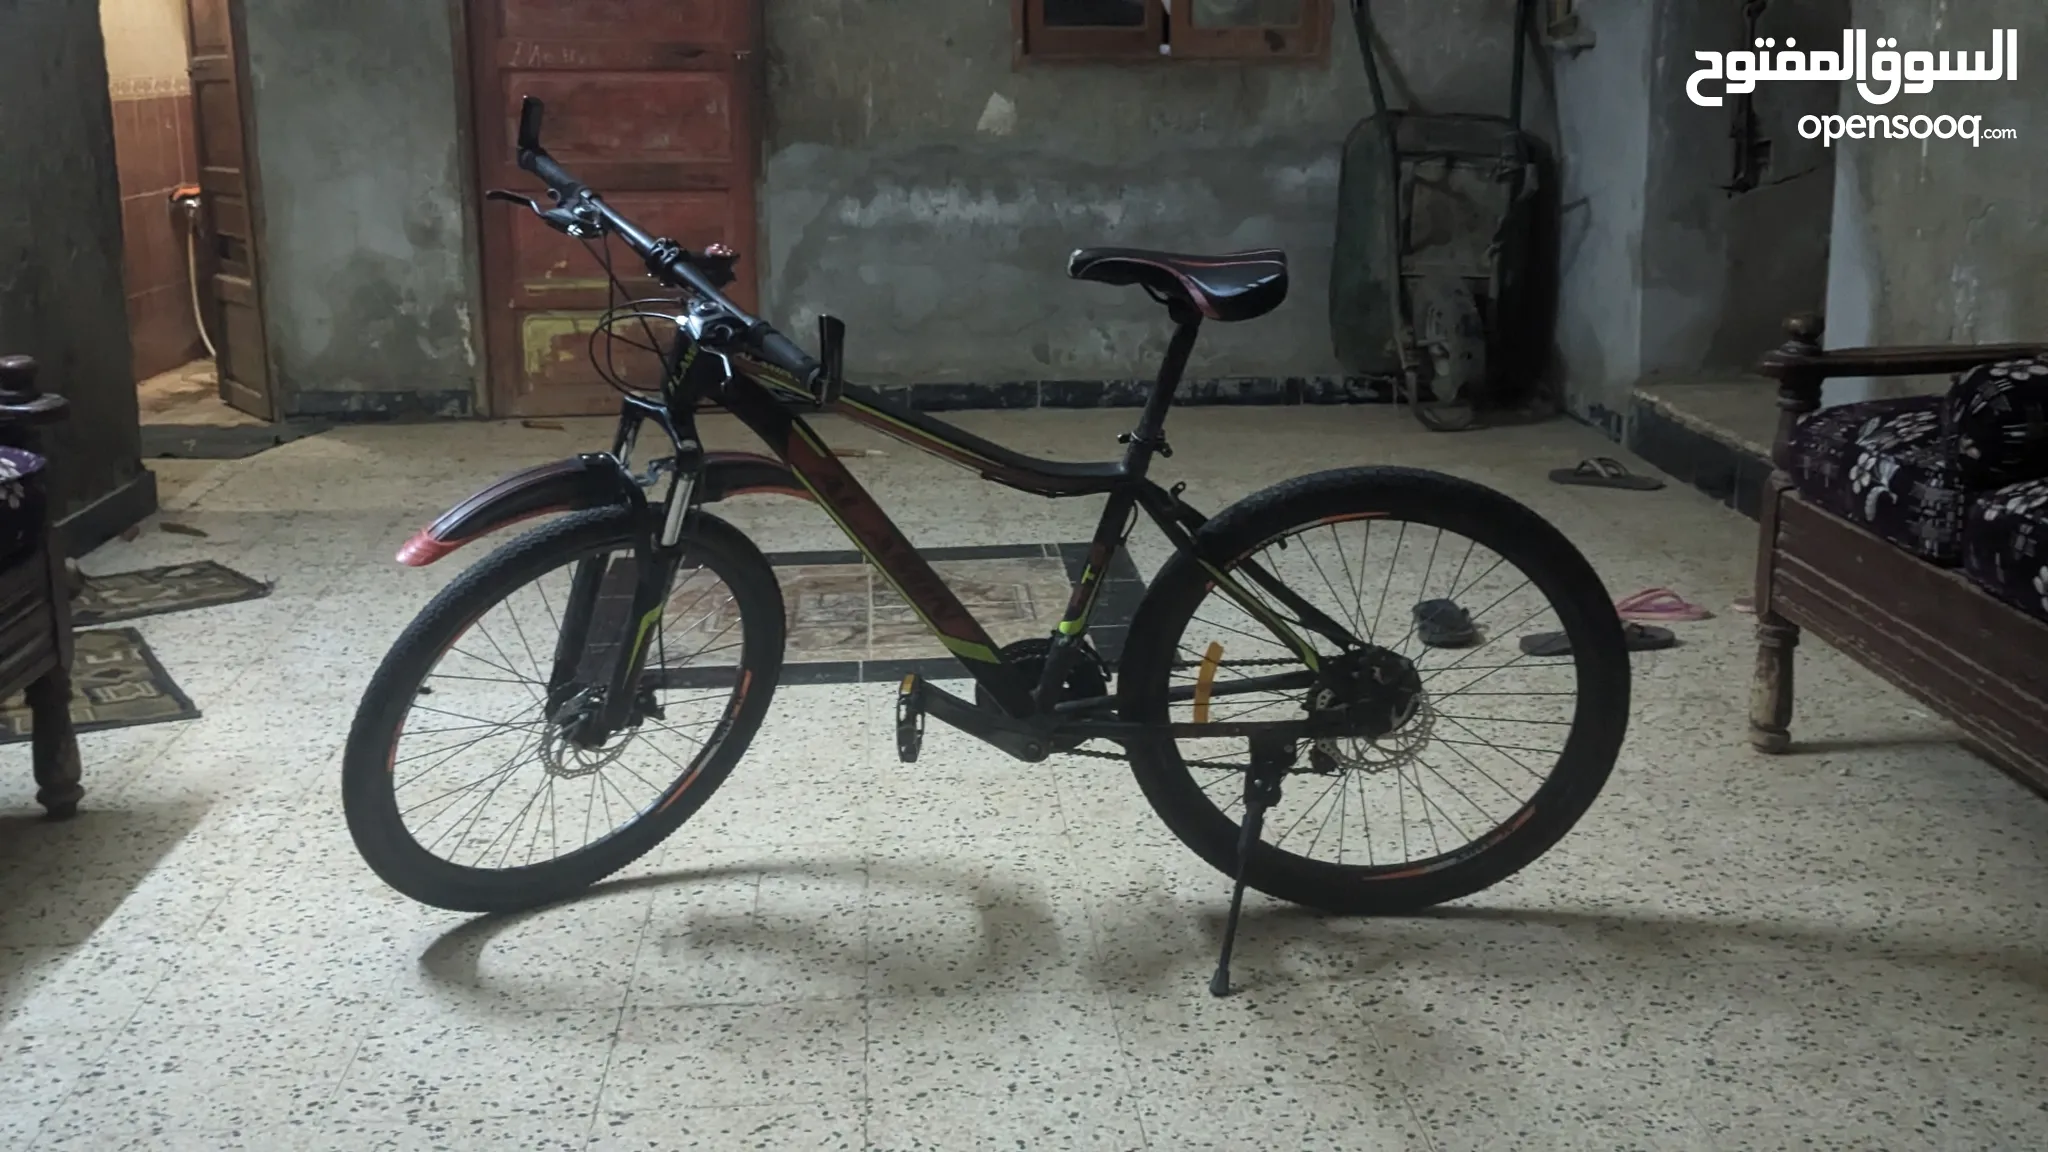 دراجات هوائية للبيع : دراجات على الطرق : جبلية : للأطفال : قطع غيار  واكسسوار : ارخص الاسعار في مصر | السوق المفتوح